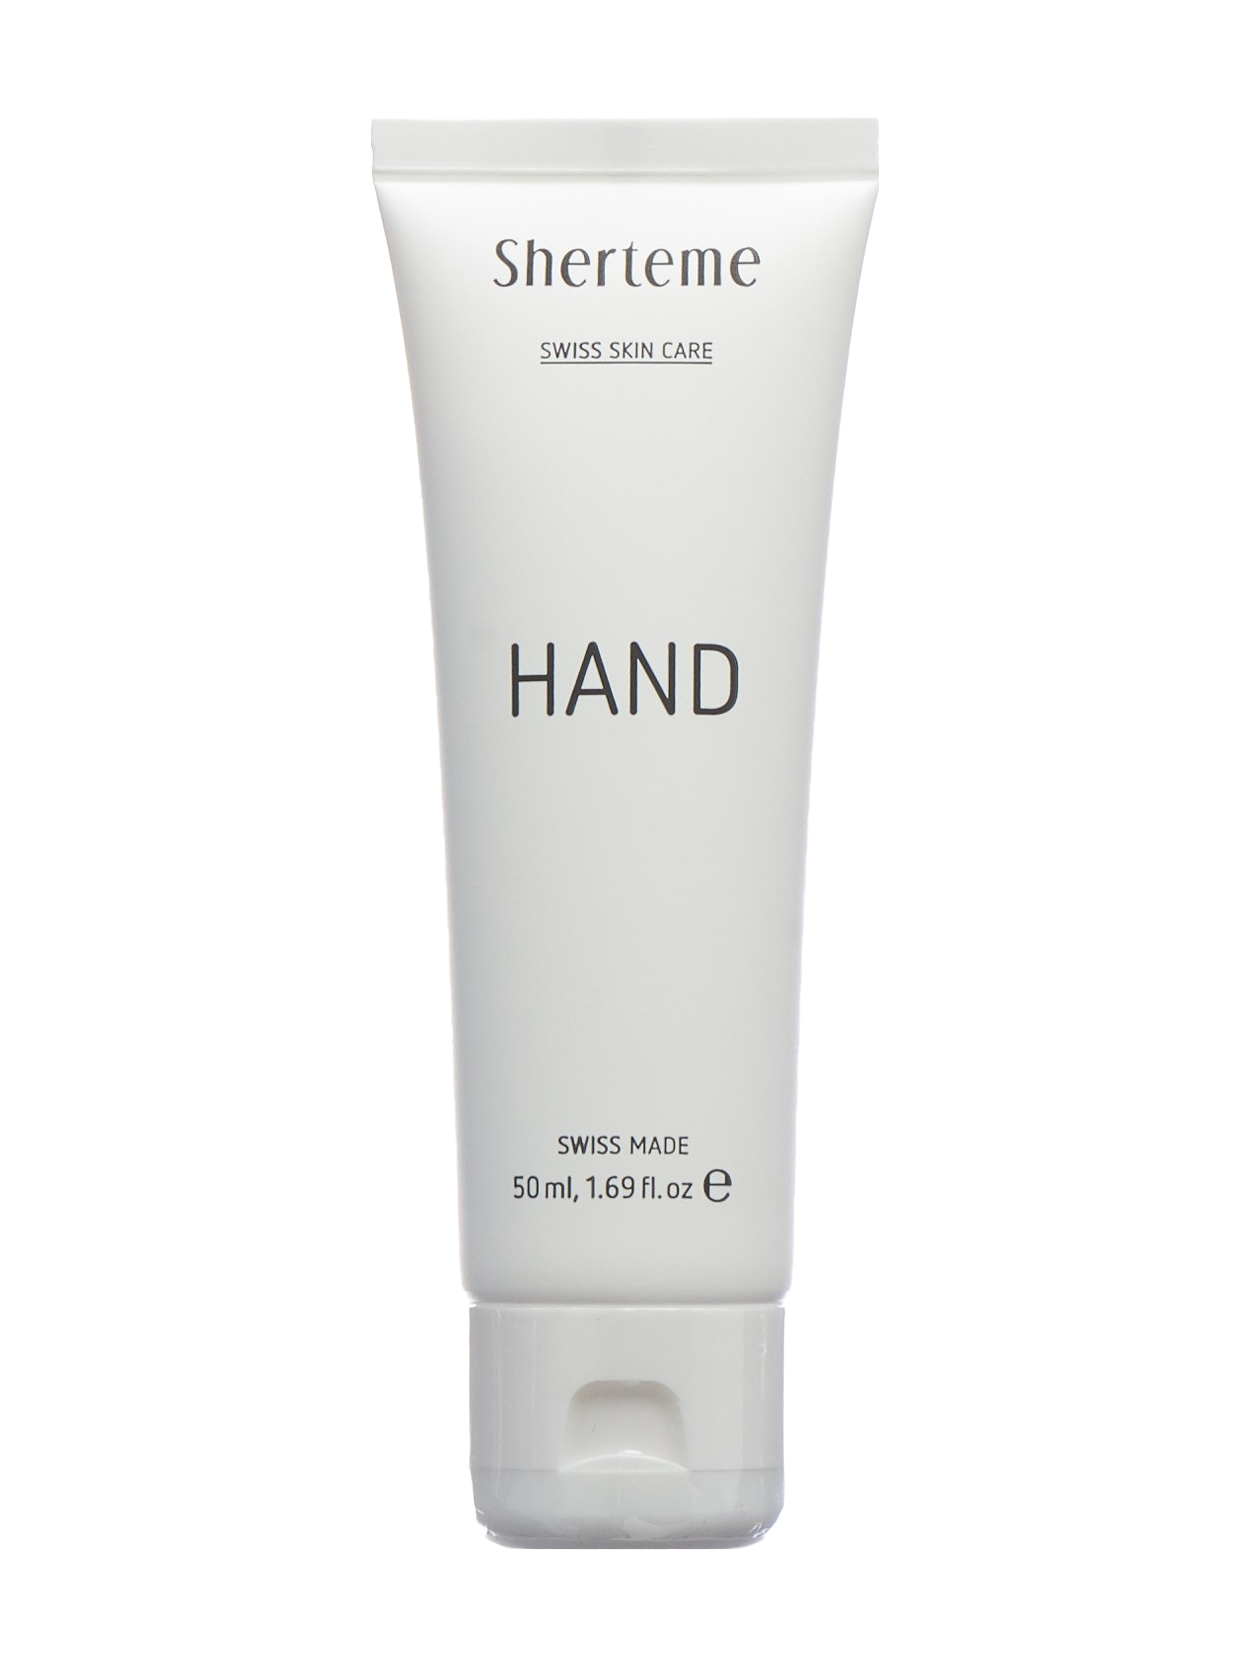 HAND Hyaluronic Hand Cream